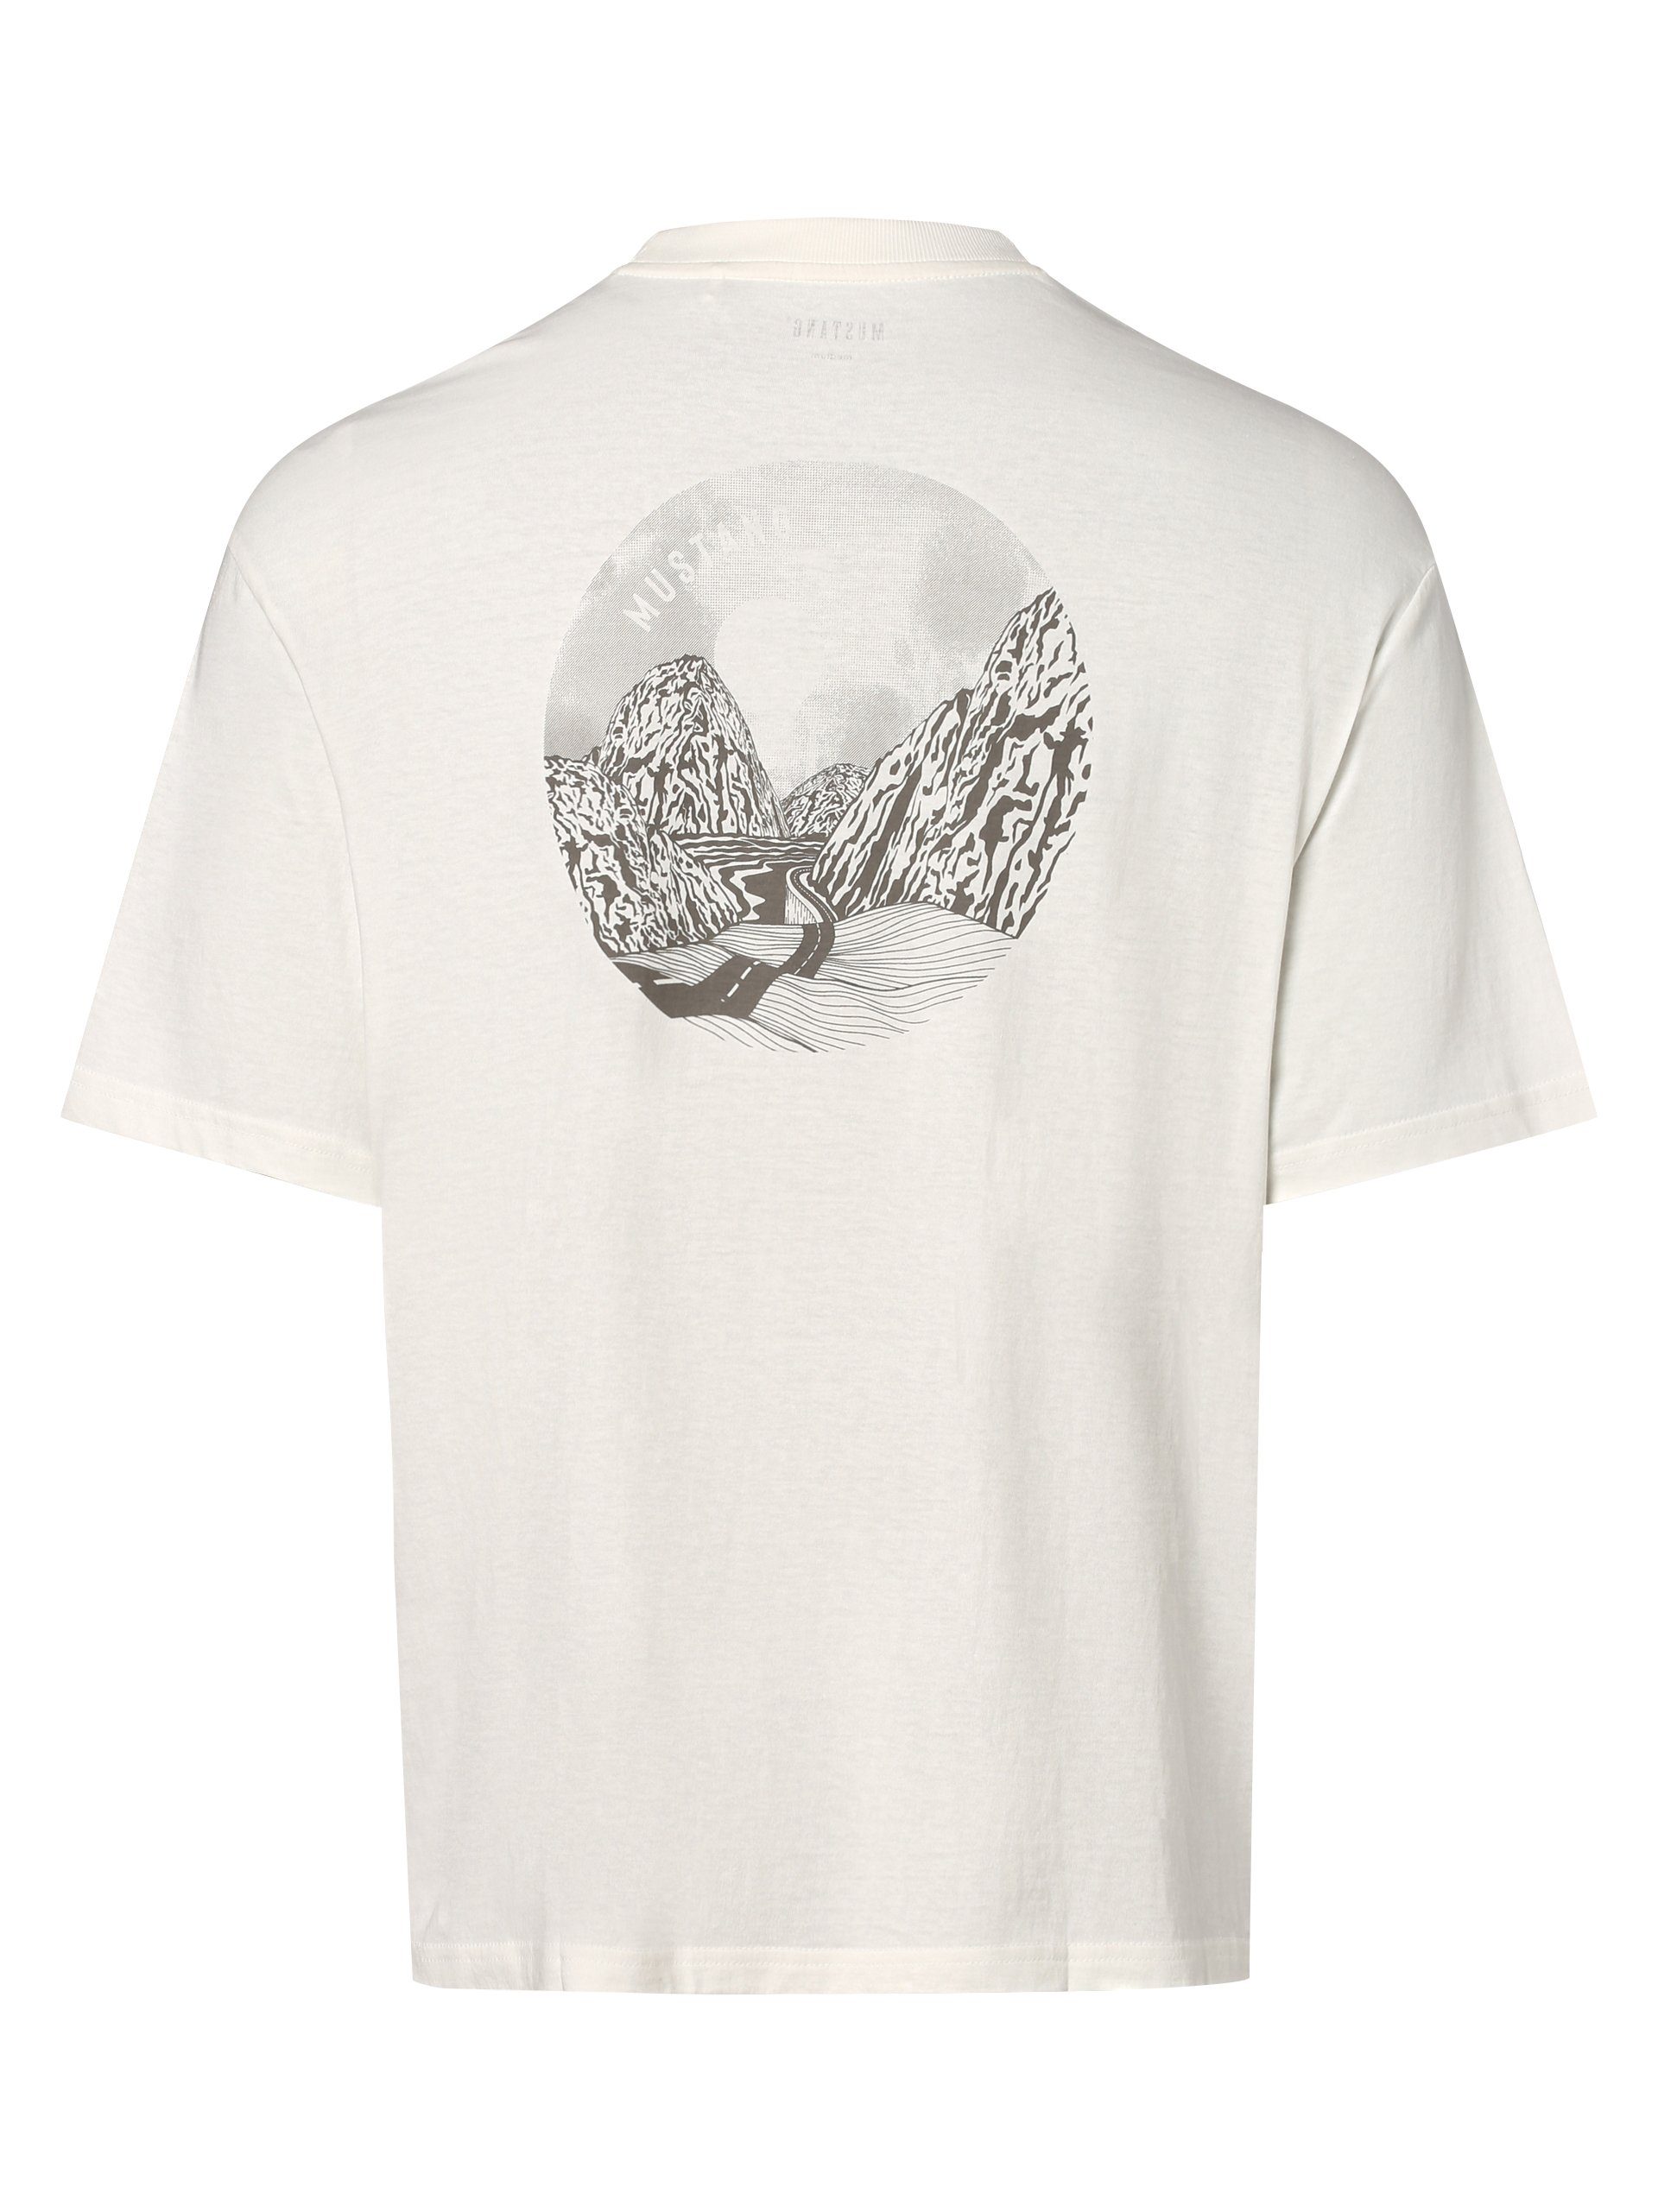 MUSTANG Aidan T-Shirt ecru Style